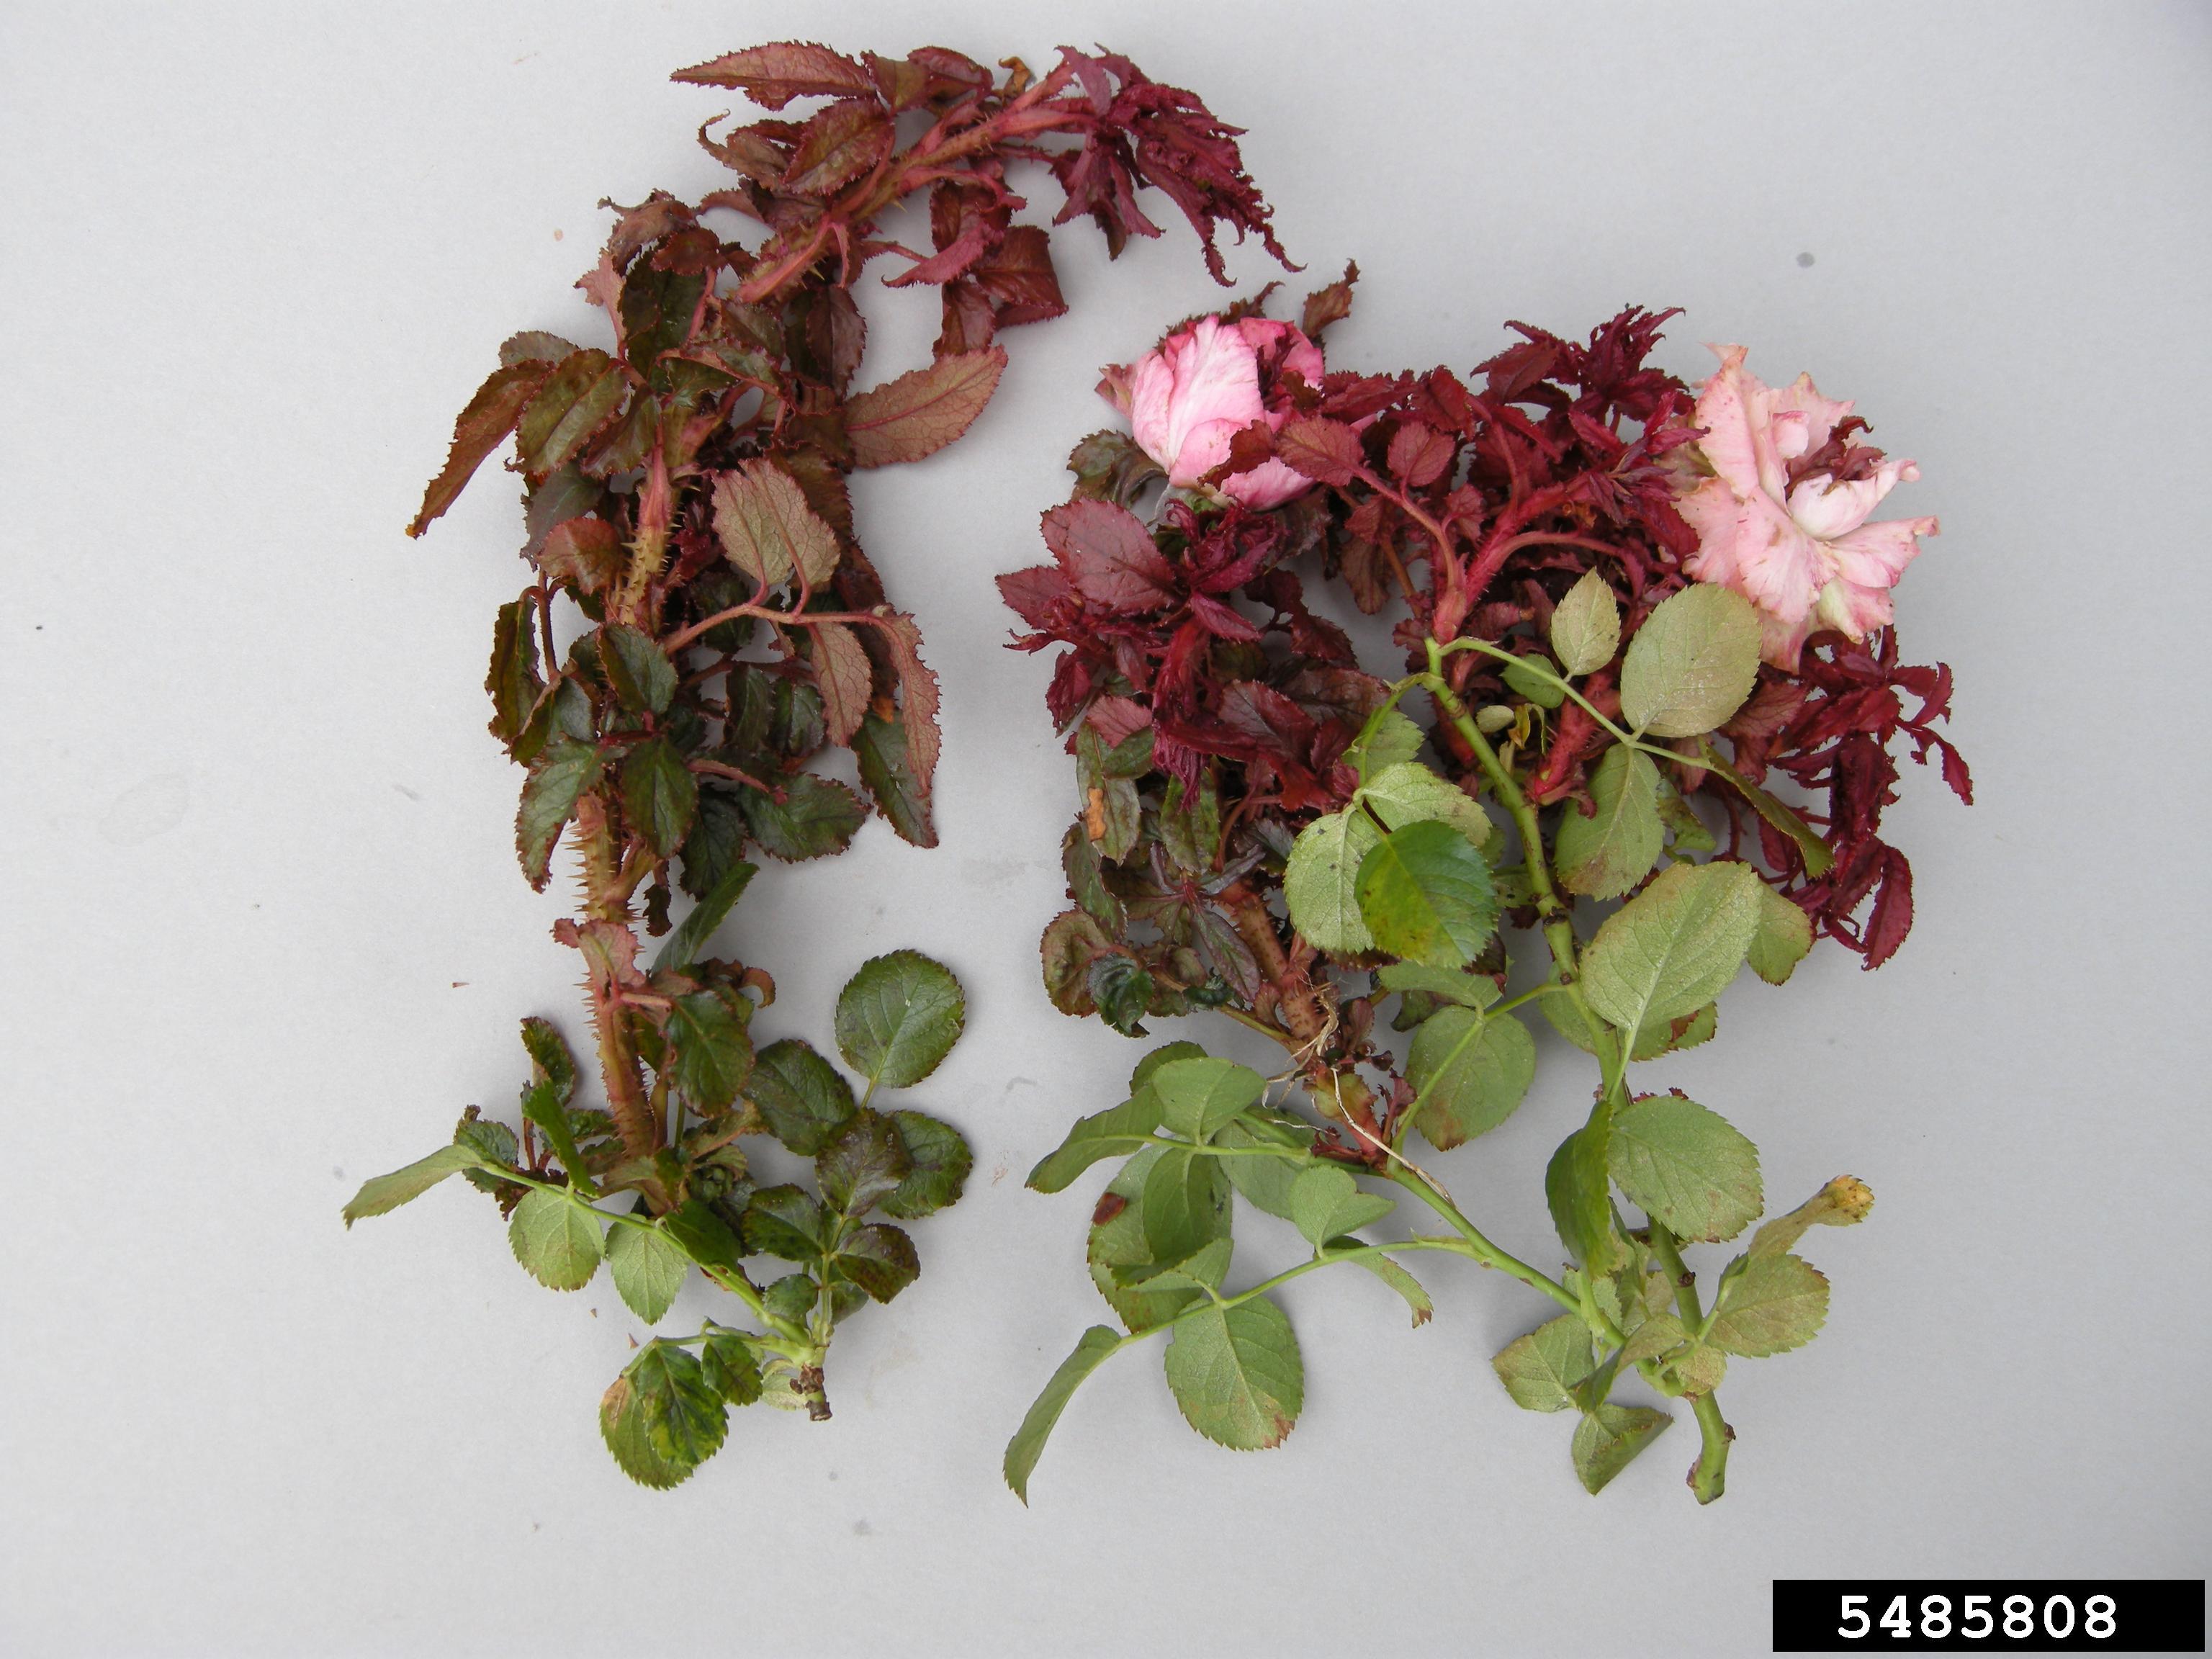 Rose rosette disease on leaves